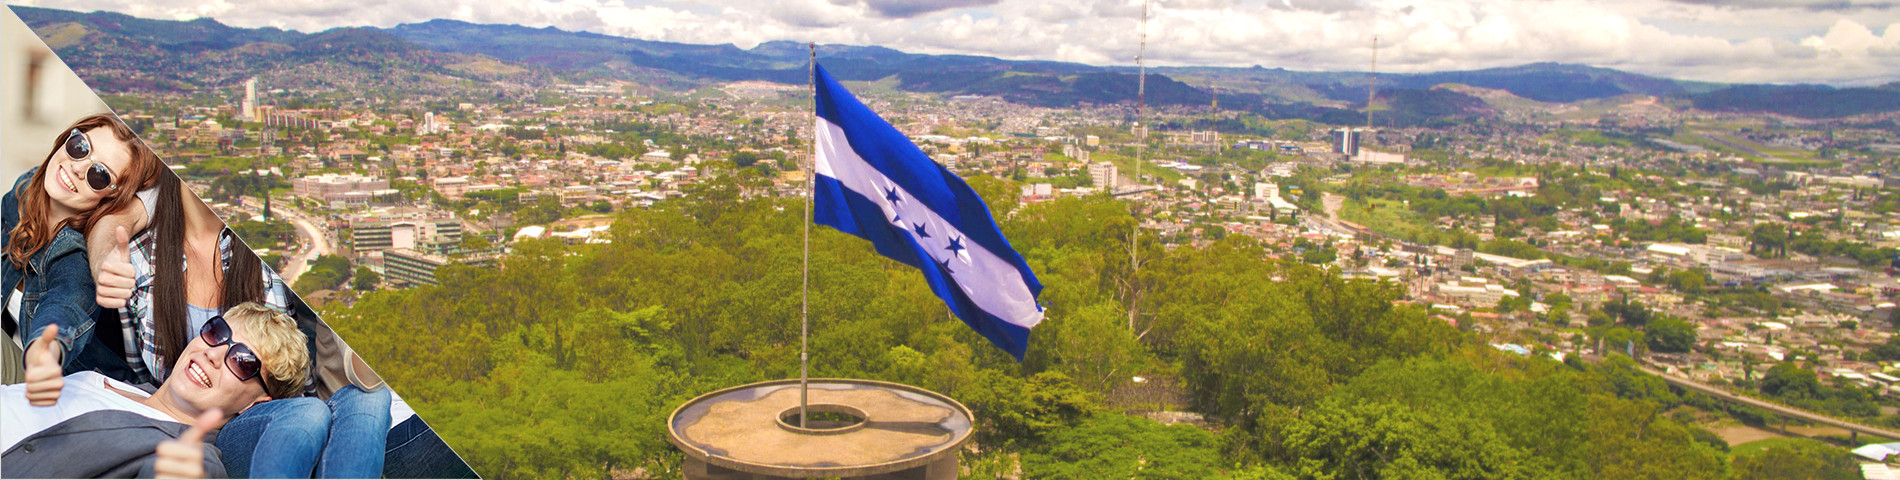 Honduras - Školní výlety / Skupiny